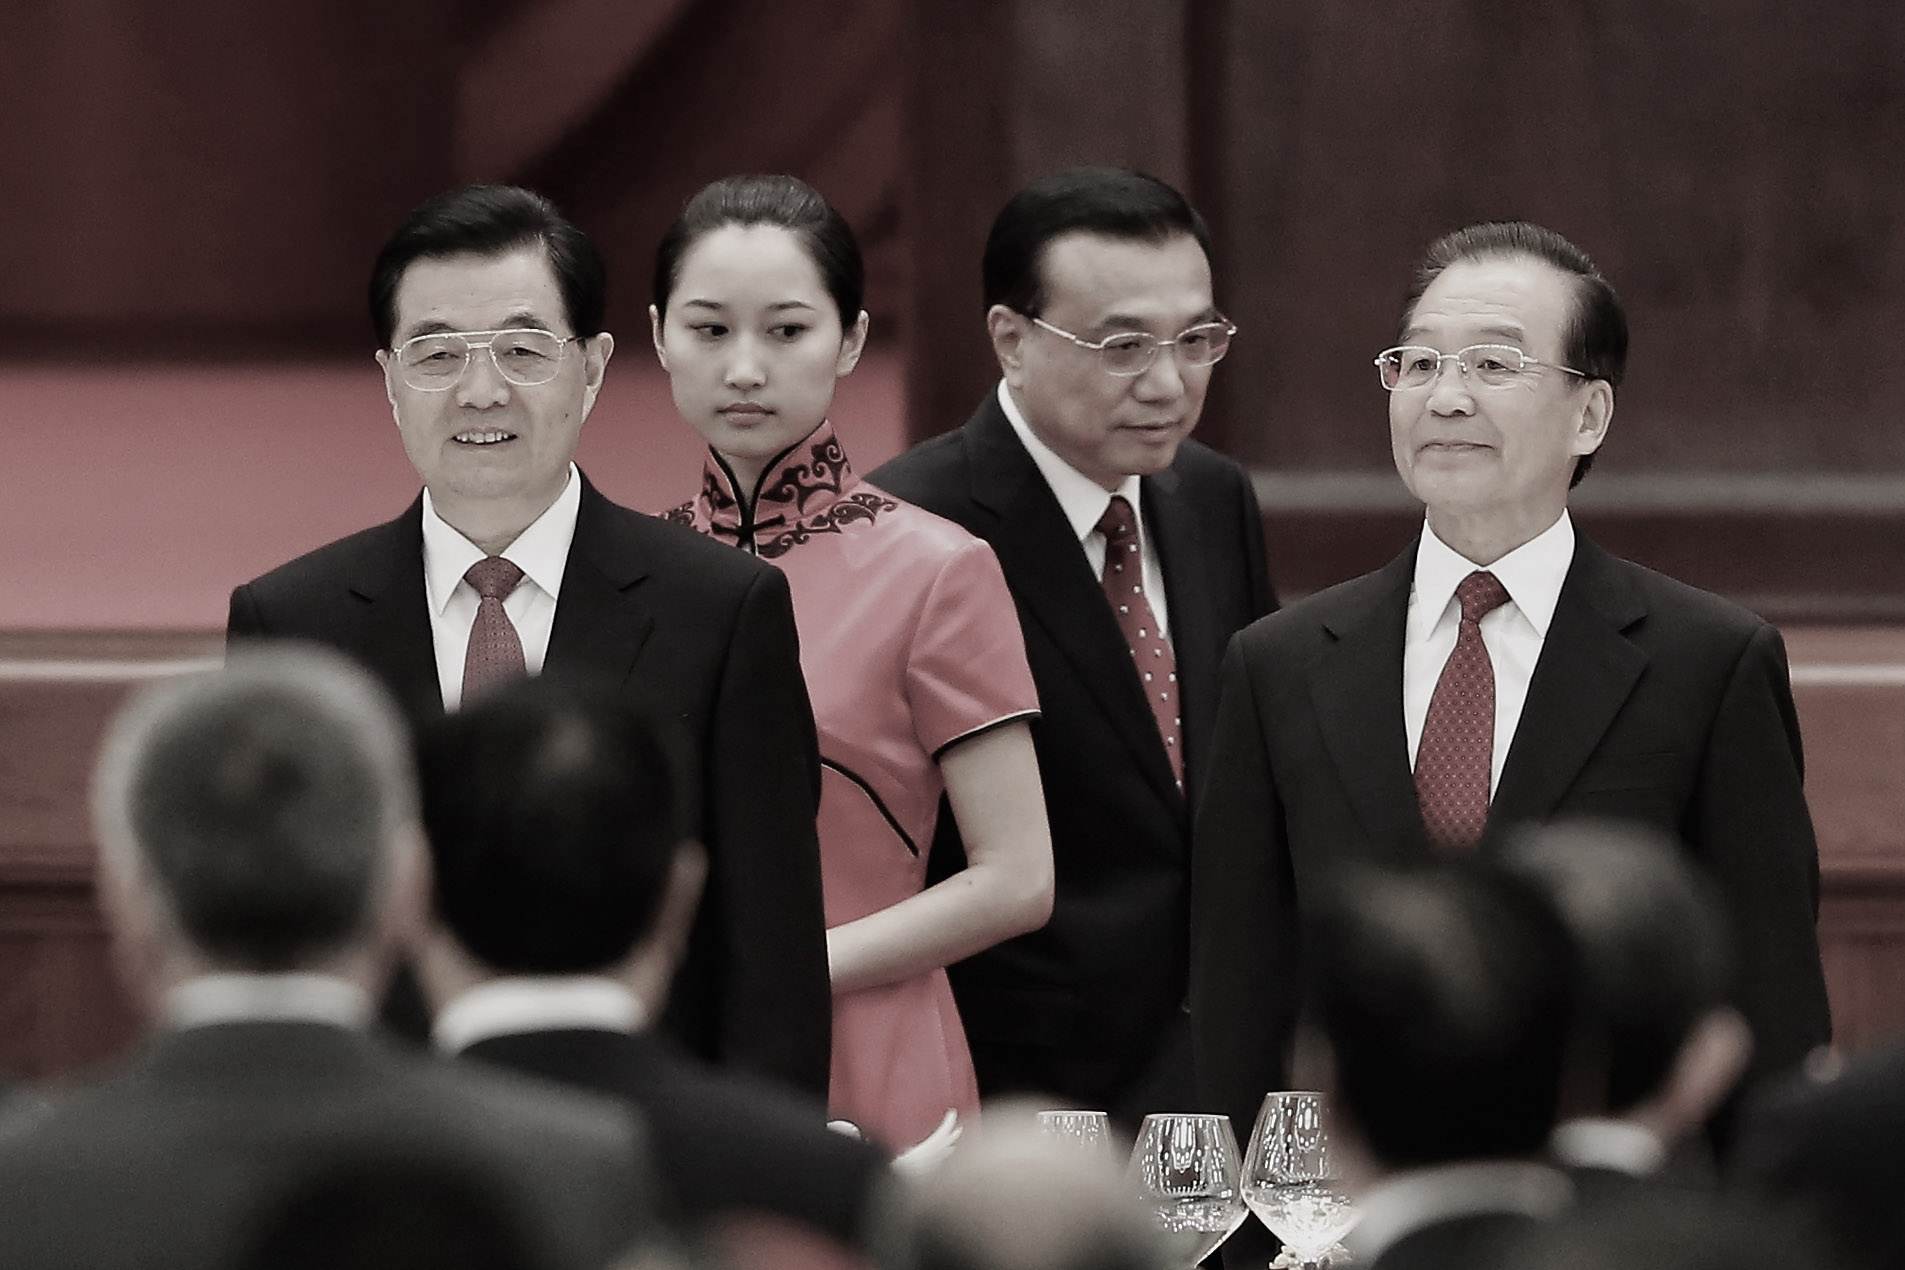 Ngày 29/09/2012, Chủ tịch ĐCSTQ Hồ Cẩm Đào, Phó Thủ tướng Lý Khắc Cường và Thủ tướng Ôn Gia Bảo (lần lượt từ trái sang) đã tham dự tiệc kỷ niệm 63 năm thành lập ĐCSTQ tại Đại lễ đường Nhân dân ở Bắc Kinh. (Ảnh: Lintao Zhang/Getty Images)